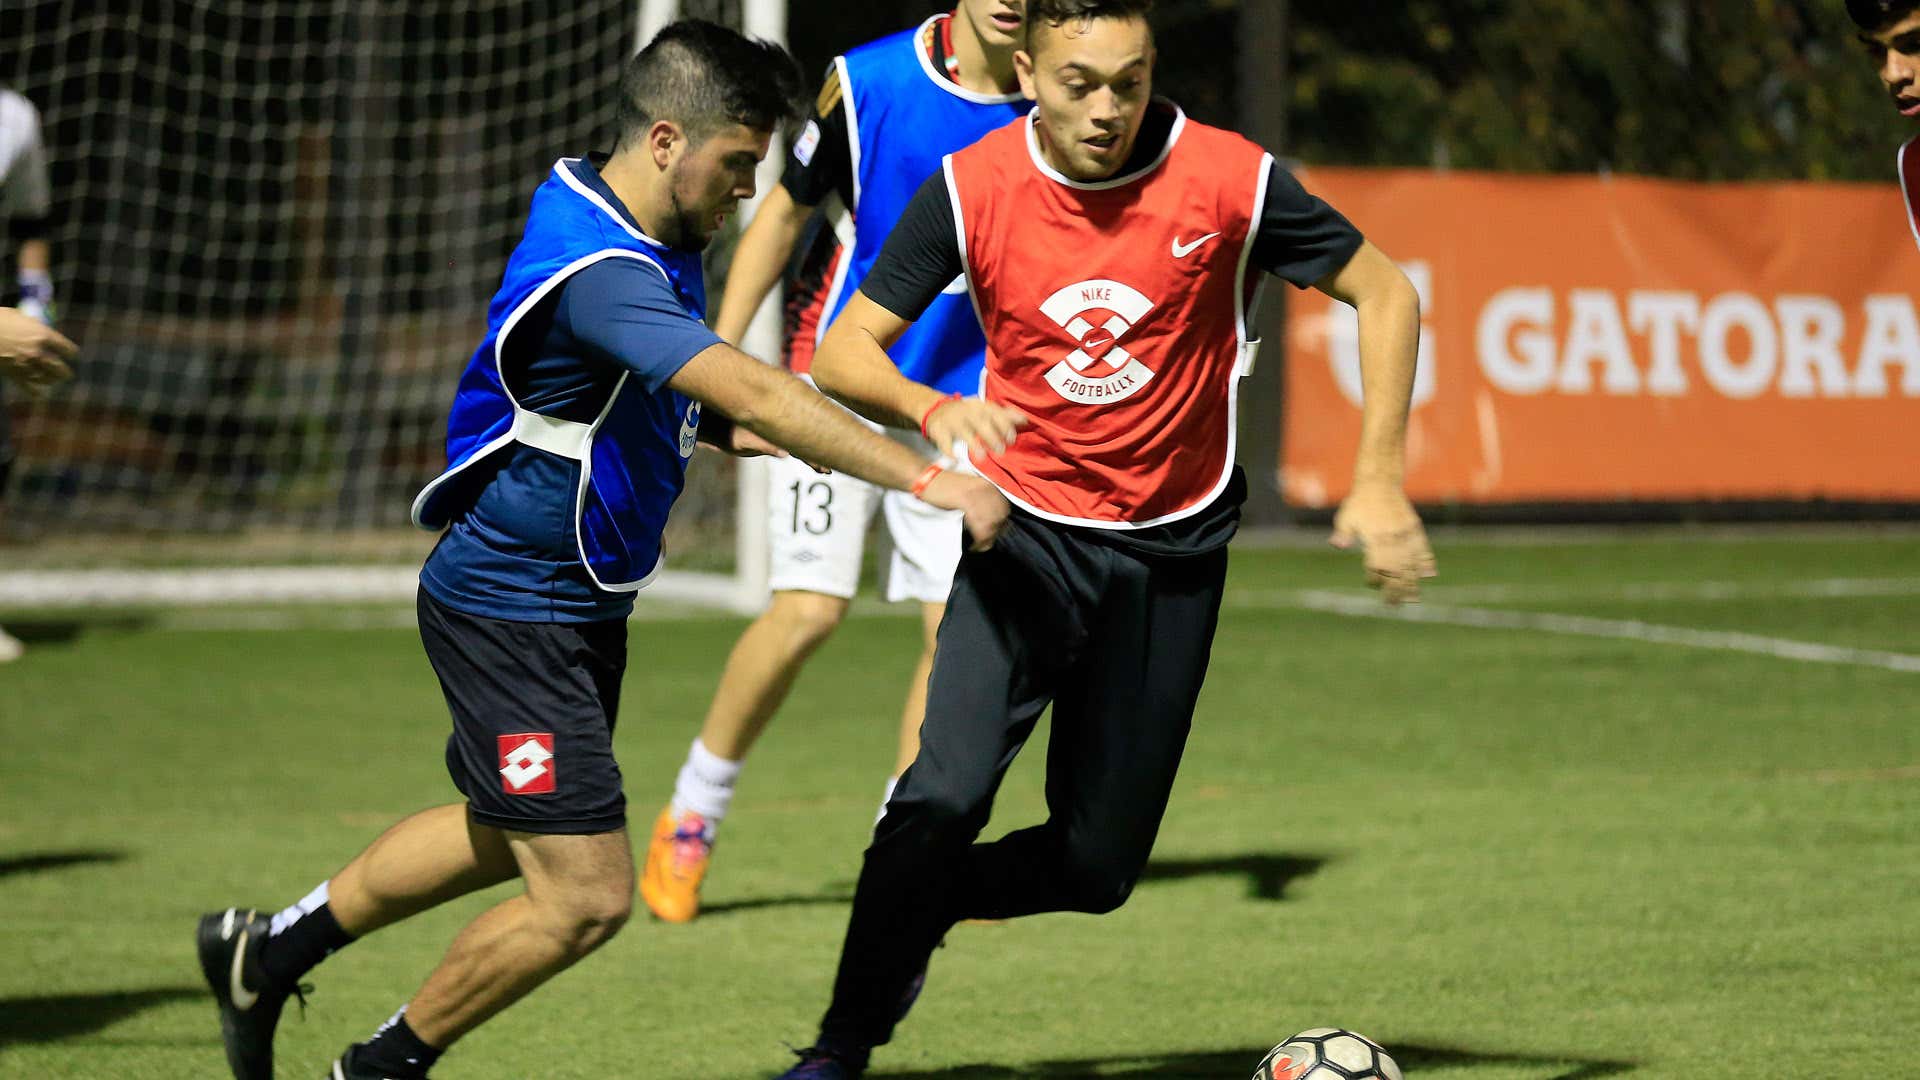 GALERÍA: Hernández y talento del desafío Nike | Goal.com